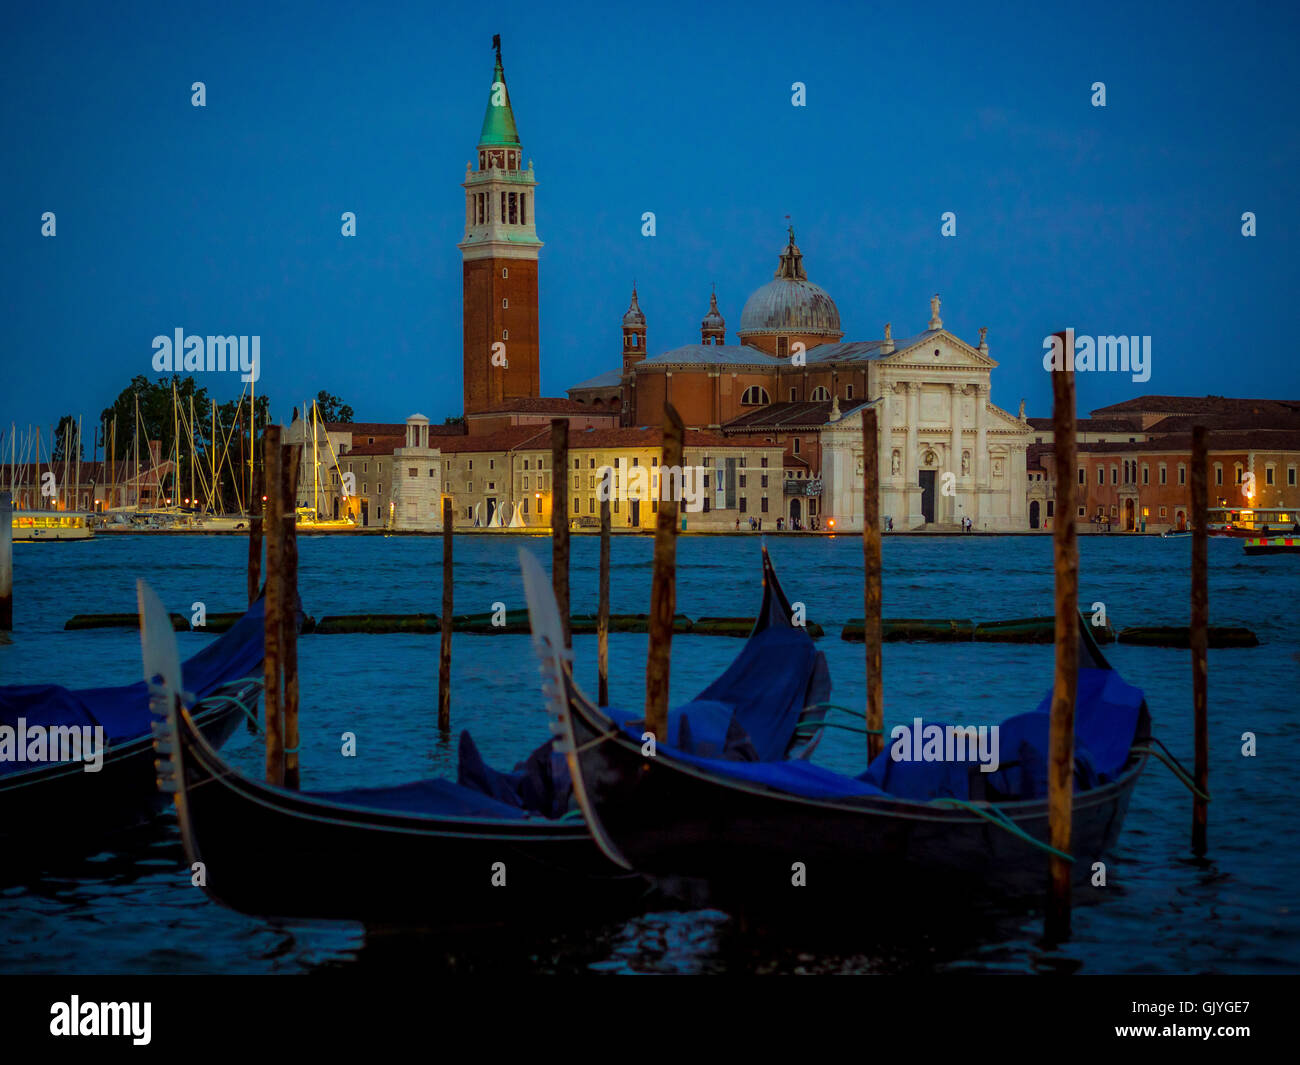 Las góndolas amarradas en la cuenca de San Marcos en el fondo, por la noche. Venecia, Italia. Foto de stock